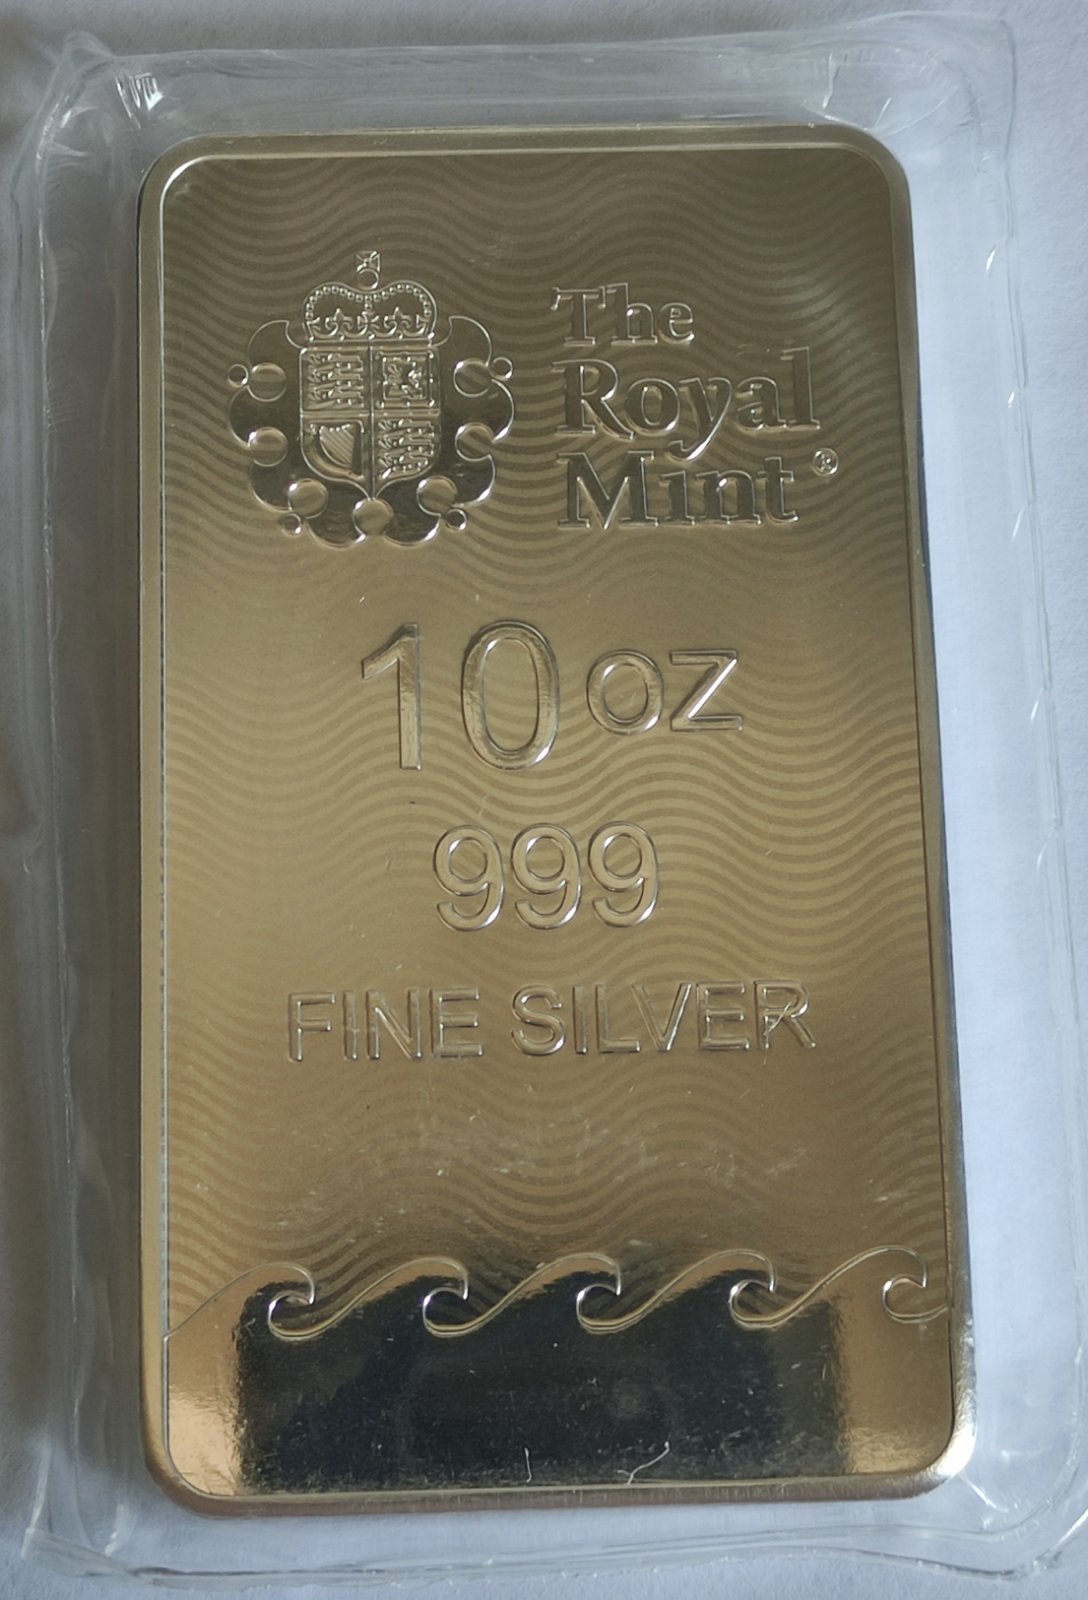 10 oz Silver Bar - The Royal Mint Britannia